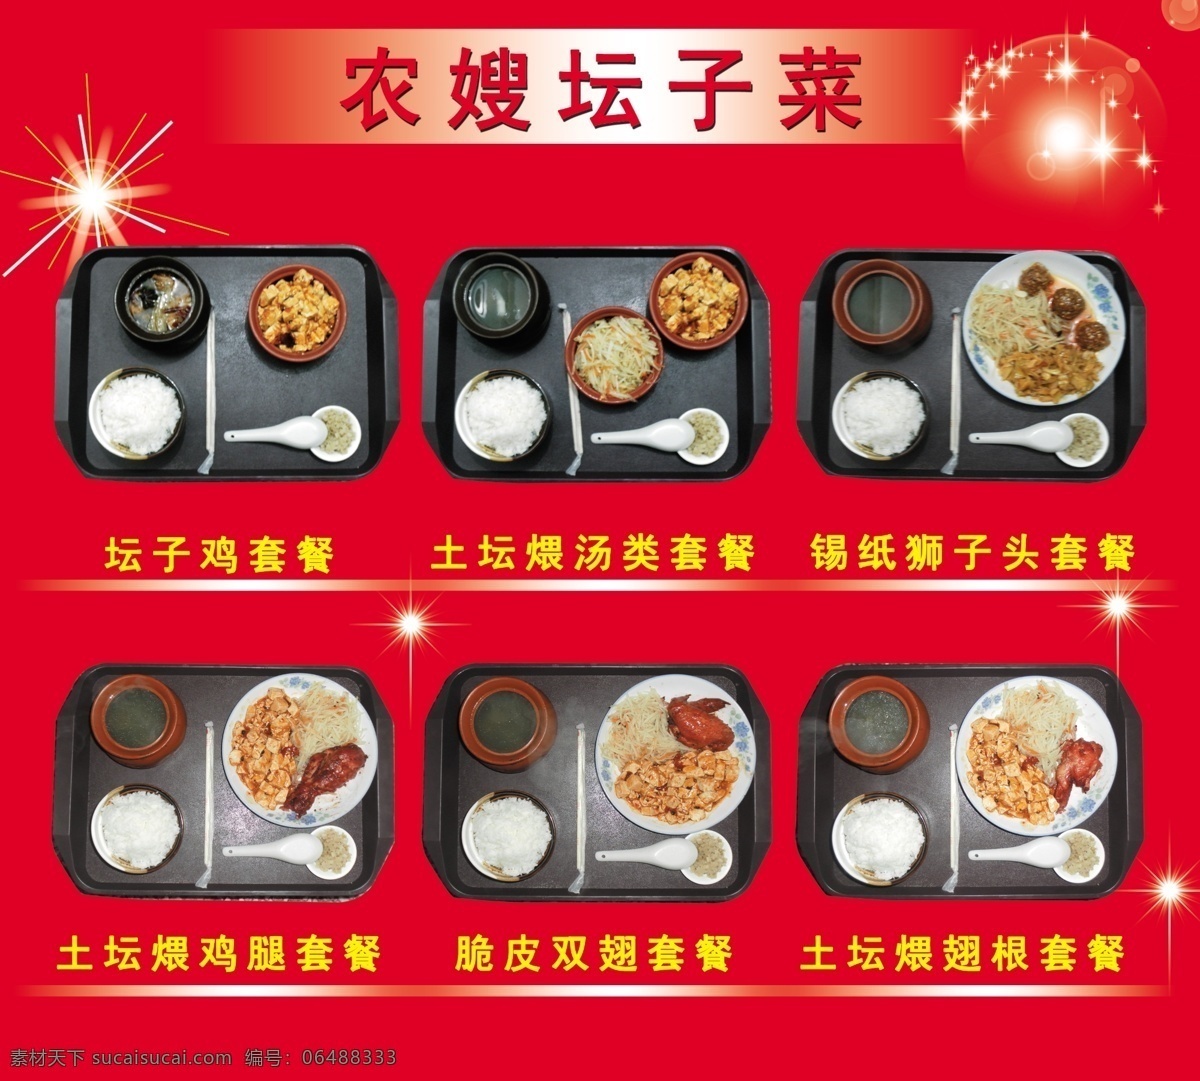 热菜 套餐 dm宣传单 煲汤 炒菜 广告设计模板 盒饭 源文件 热菜套餐 坛子菜